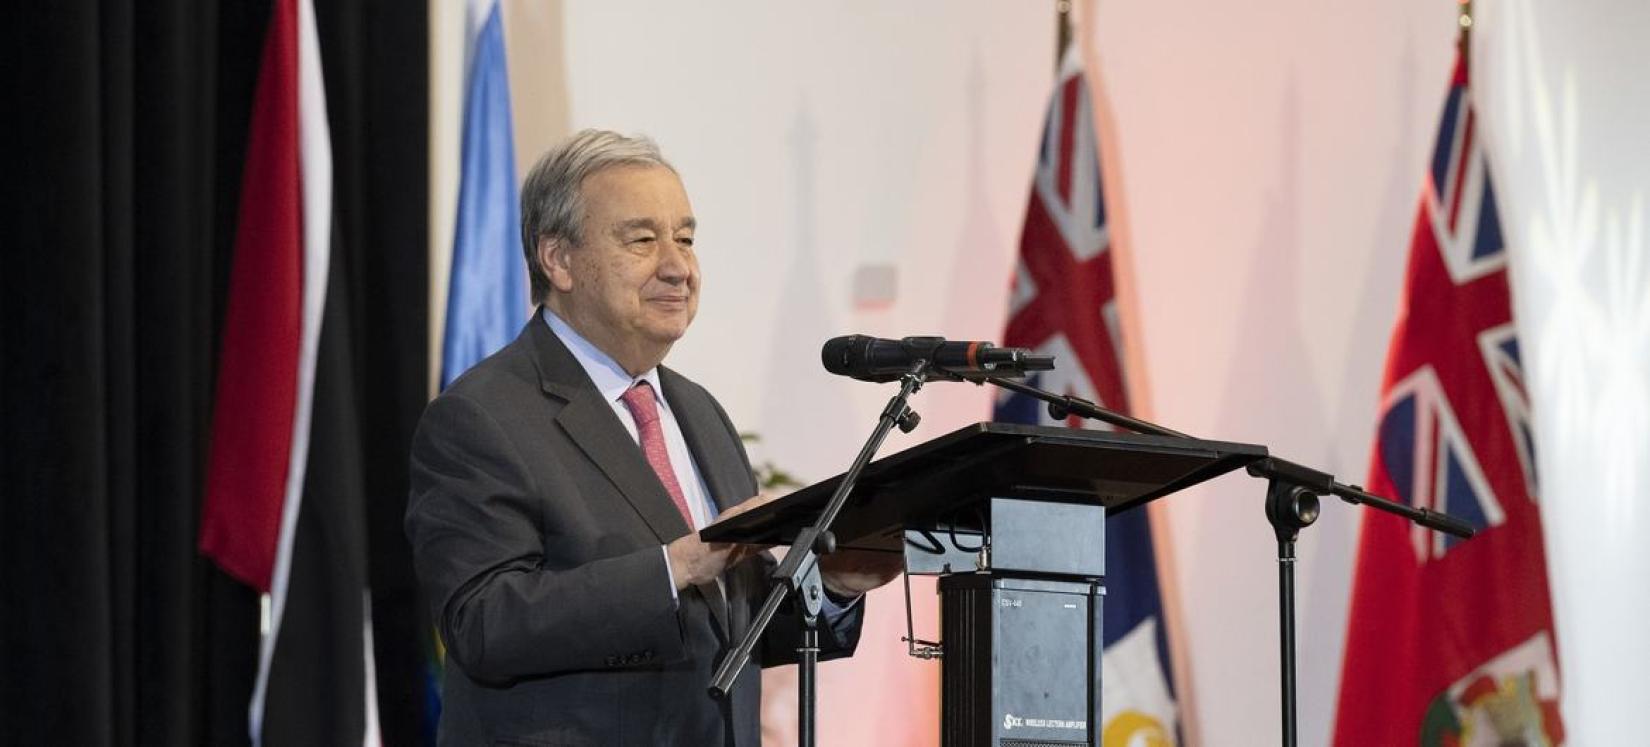 Secretário-geral da ONU discursando na abertura da  43ª Conferência da Comunidade e Mercado Comum do Caribe (CARICOM).